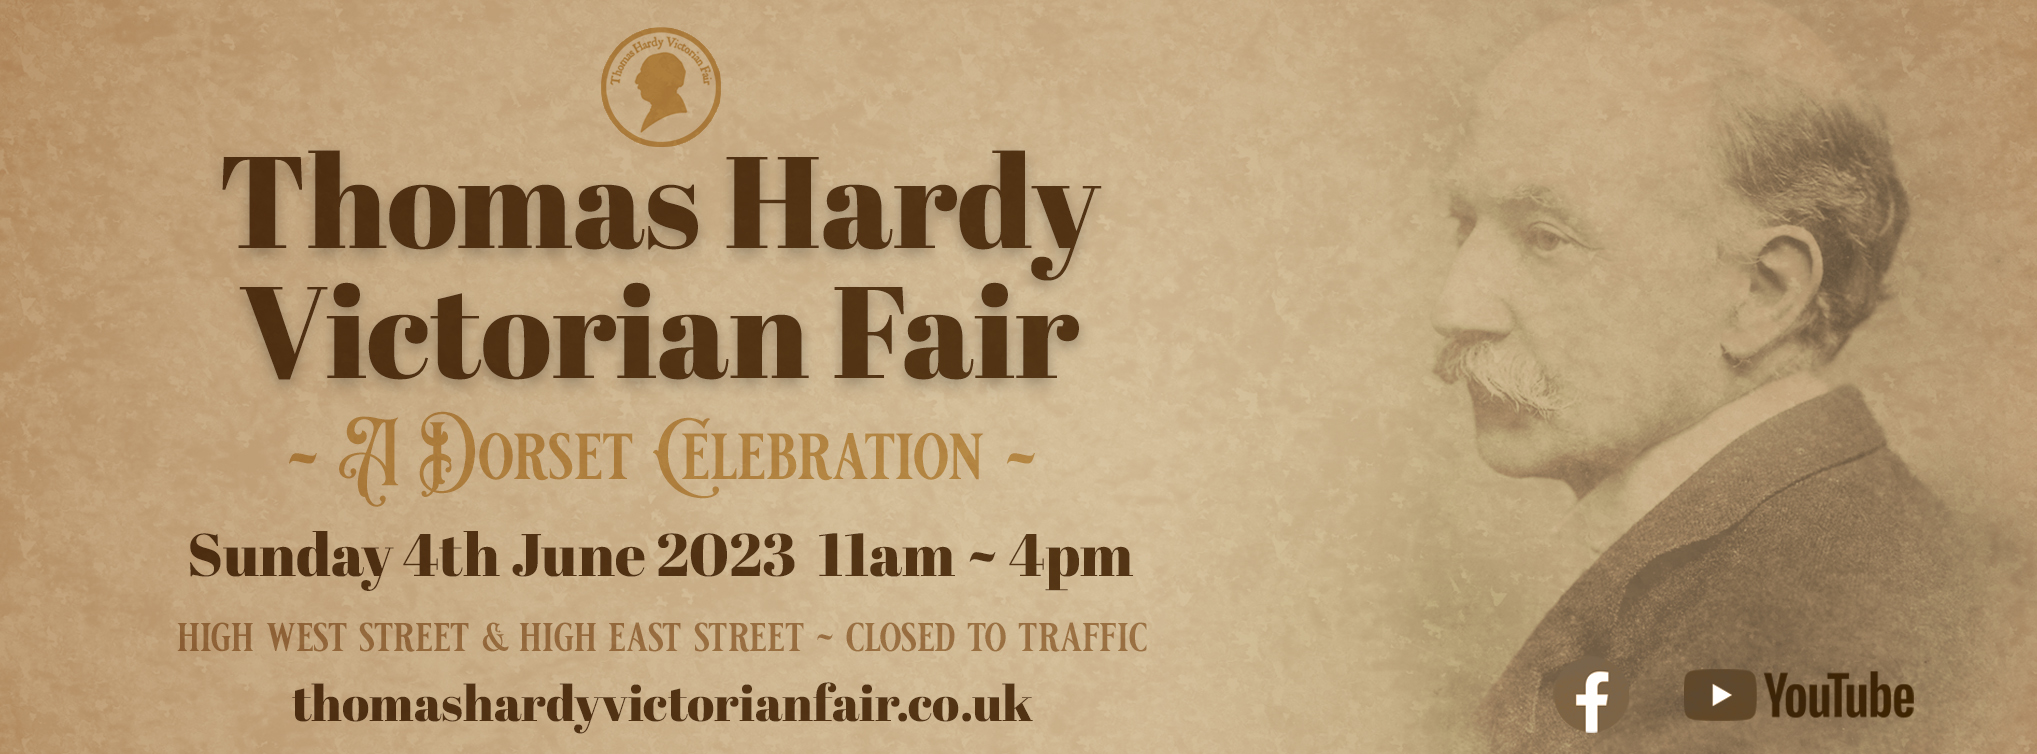 Thomas Hardy Victorian Fair